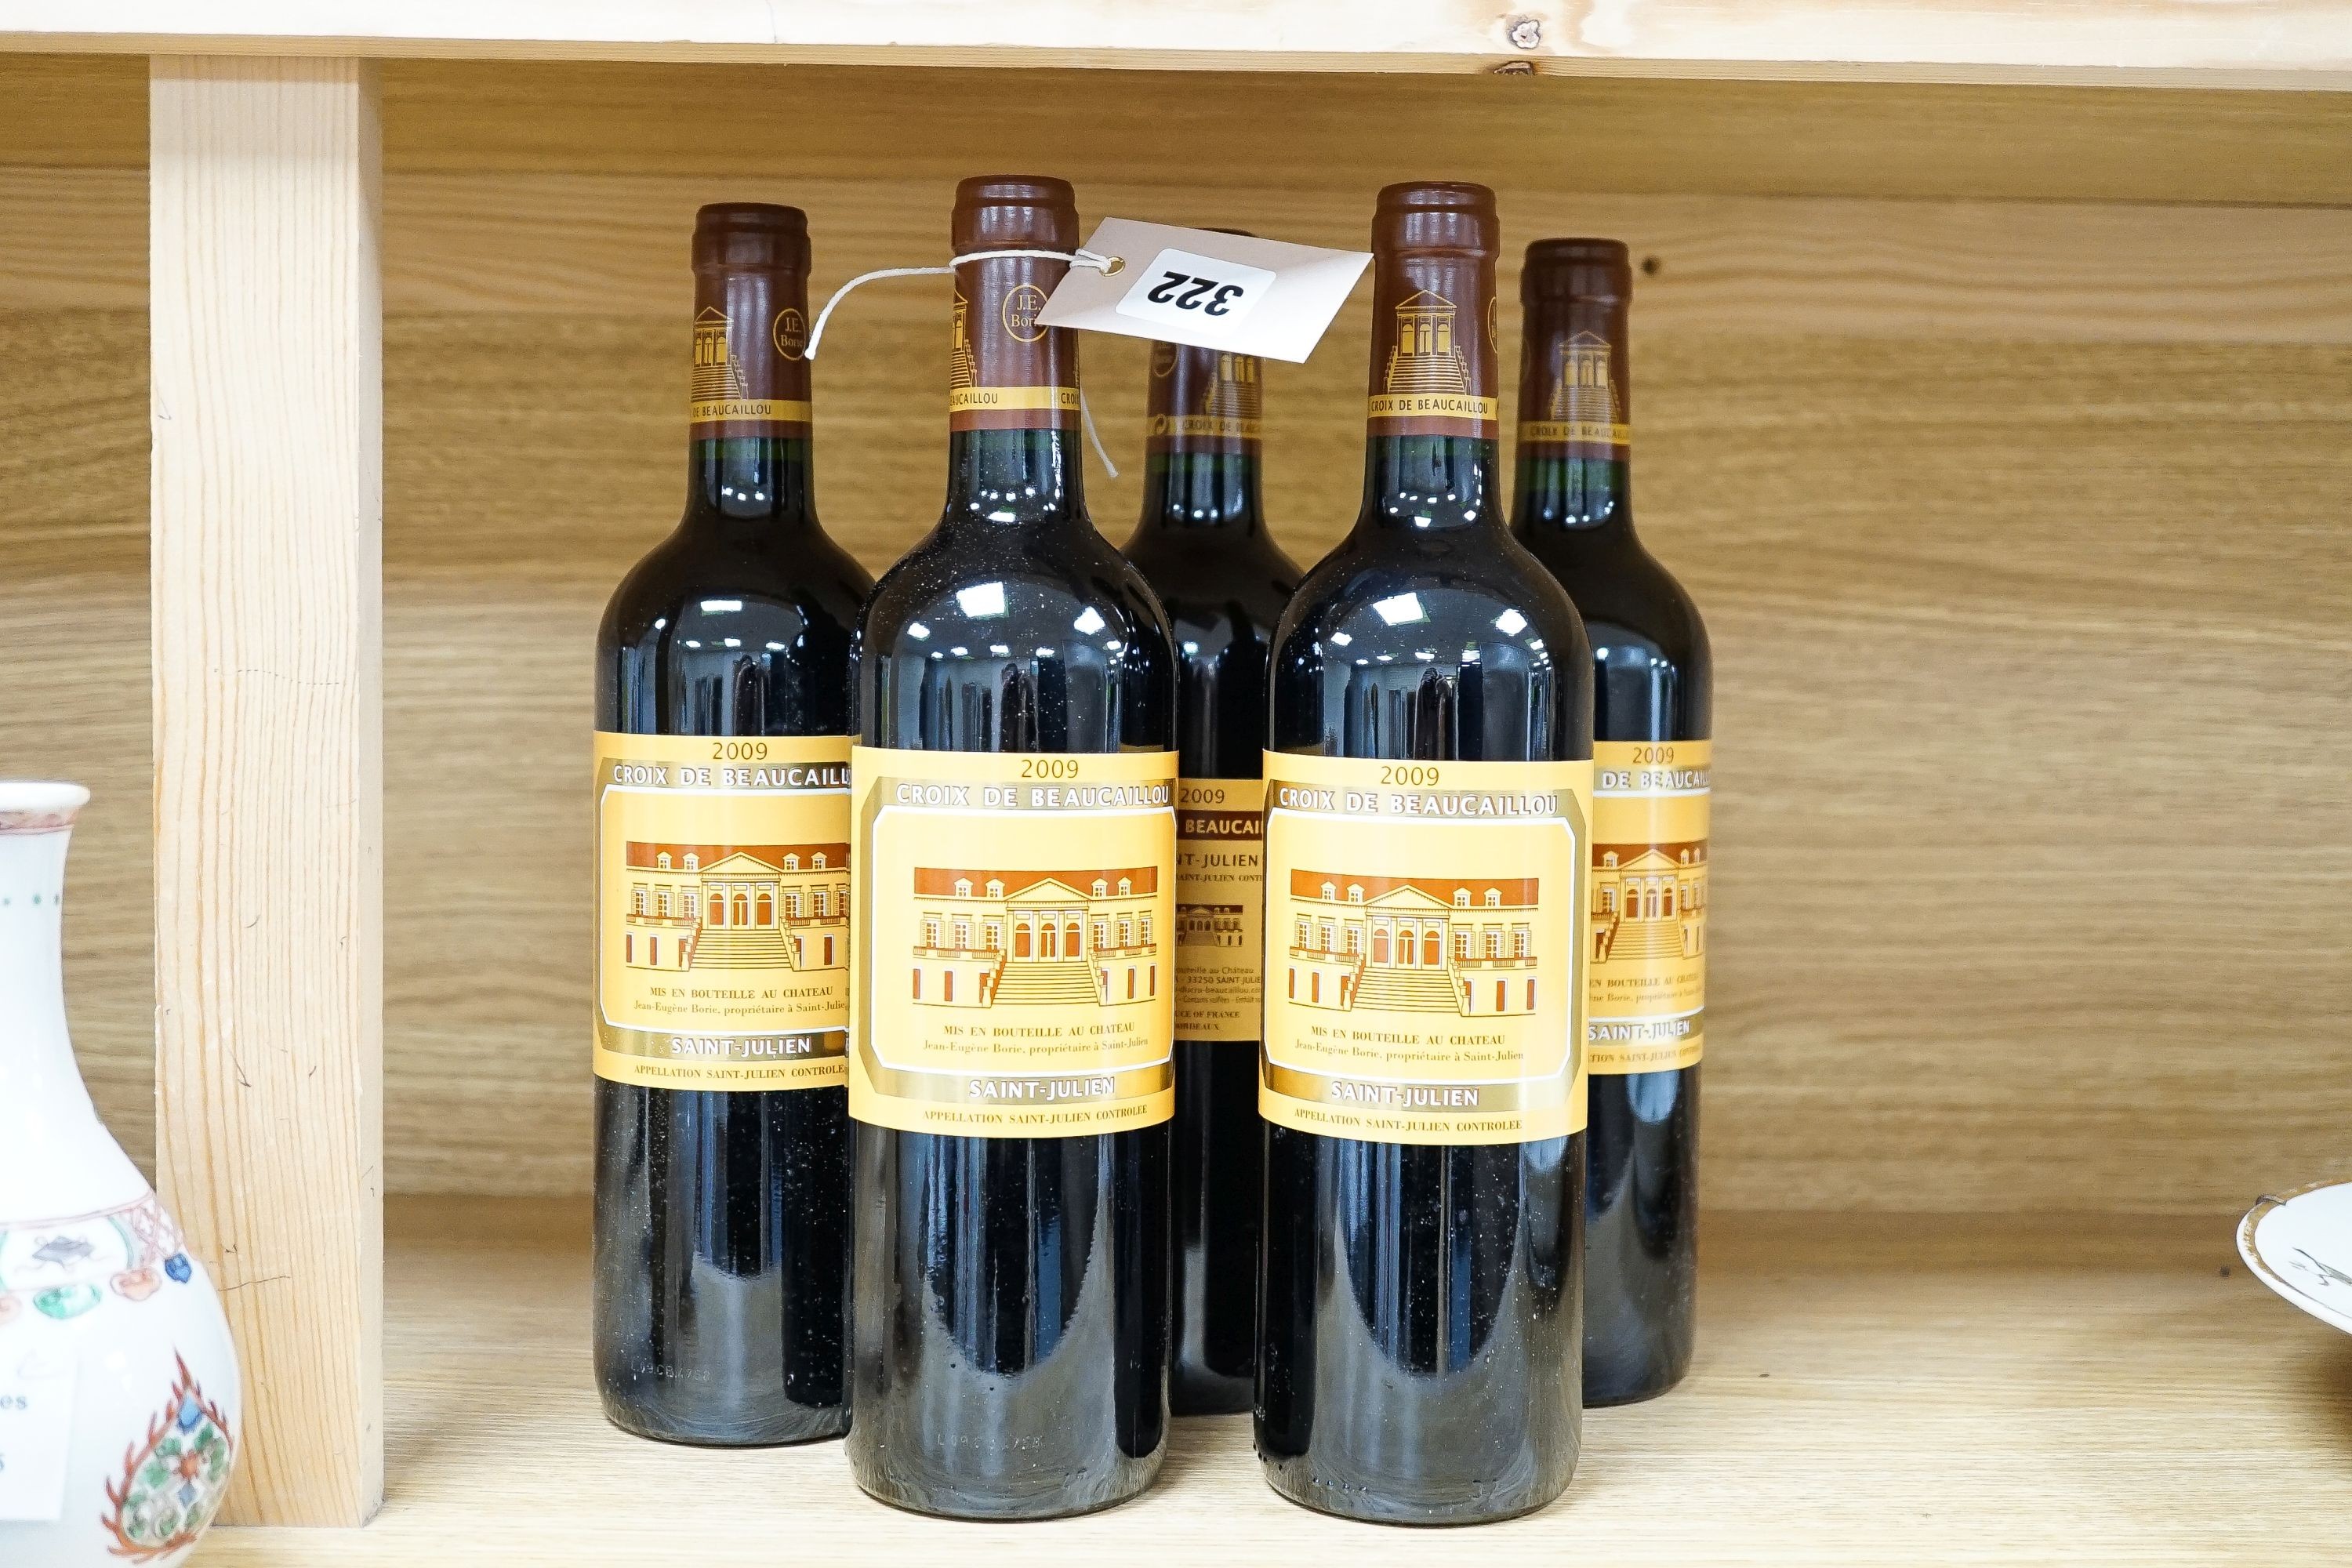 Five bottles of Croix de Beaucaillou-St. Julien OWC (2nd wine Chateau Ducru Beaucaillou), 2009, 75cl.